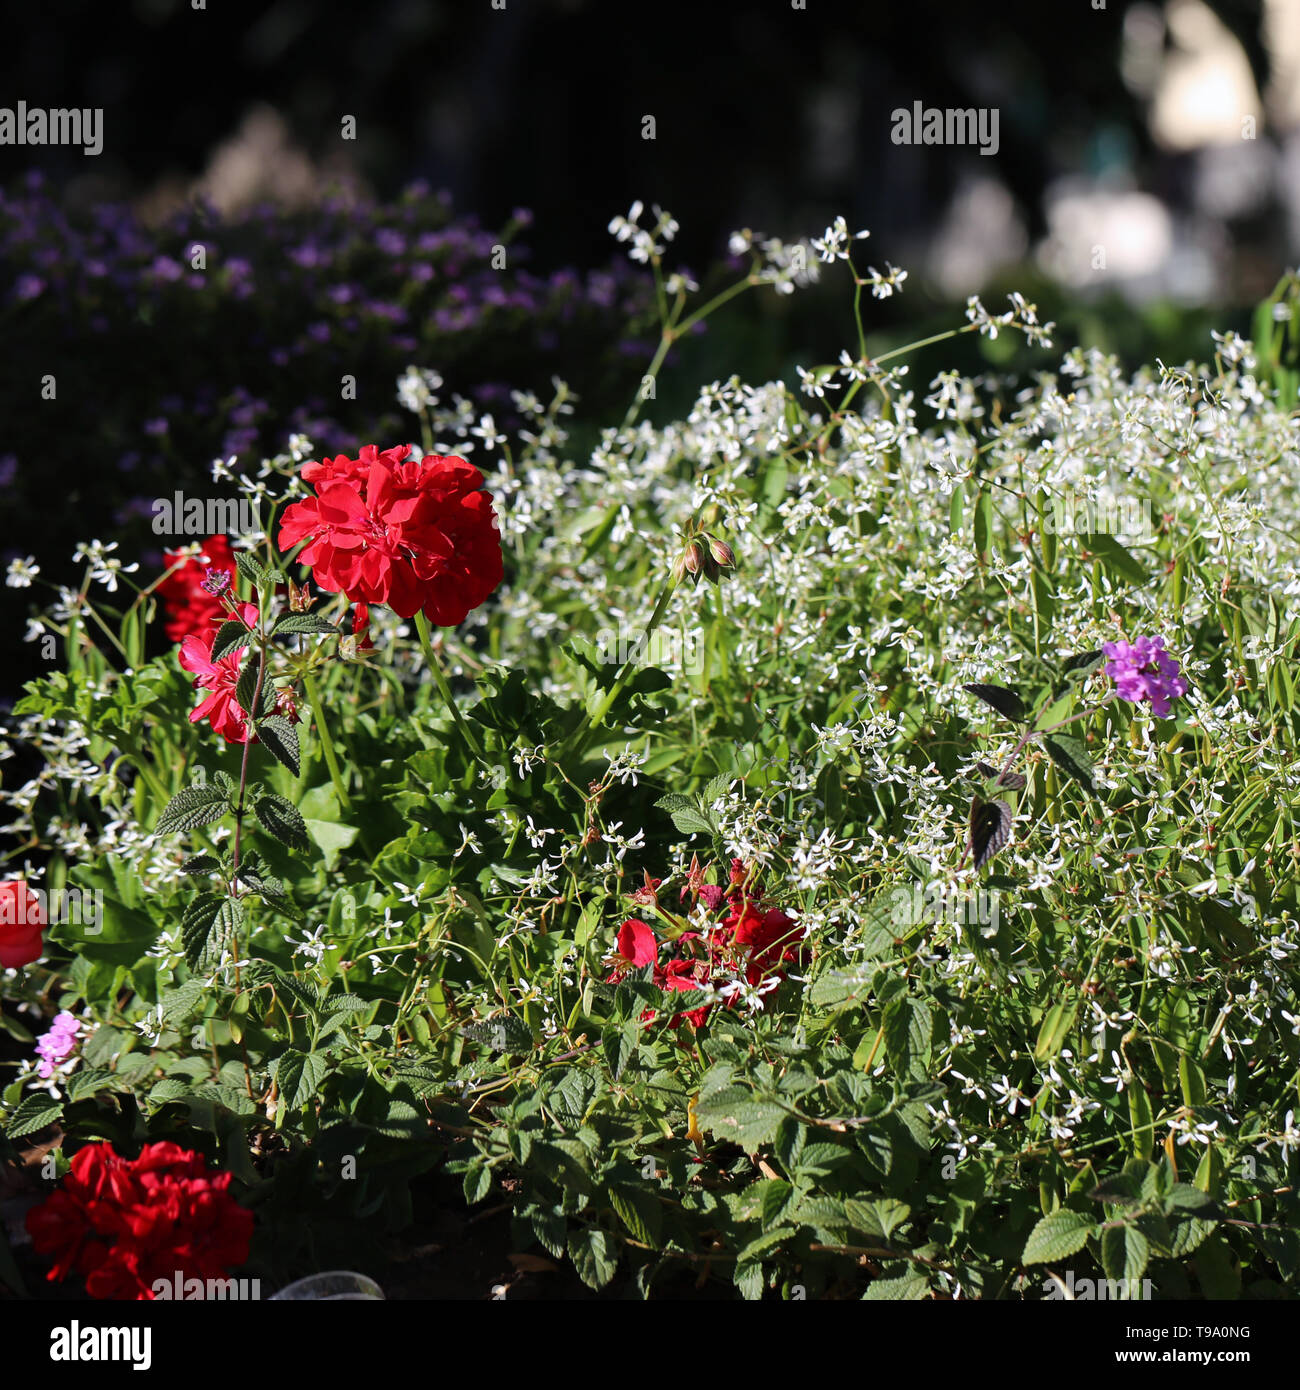 Splendido colore rosso brillante fiori e piccoli fiori bianchi, e alcune foglie con un morbido sfondo scuro. Fotografato durante una soleggiata giornata di primavera in Madeira. Foto Stock